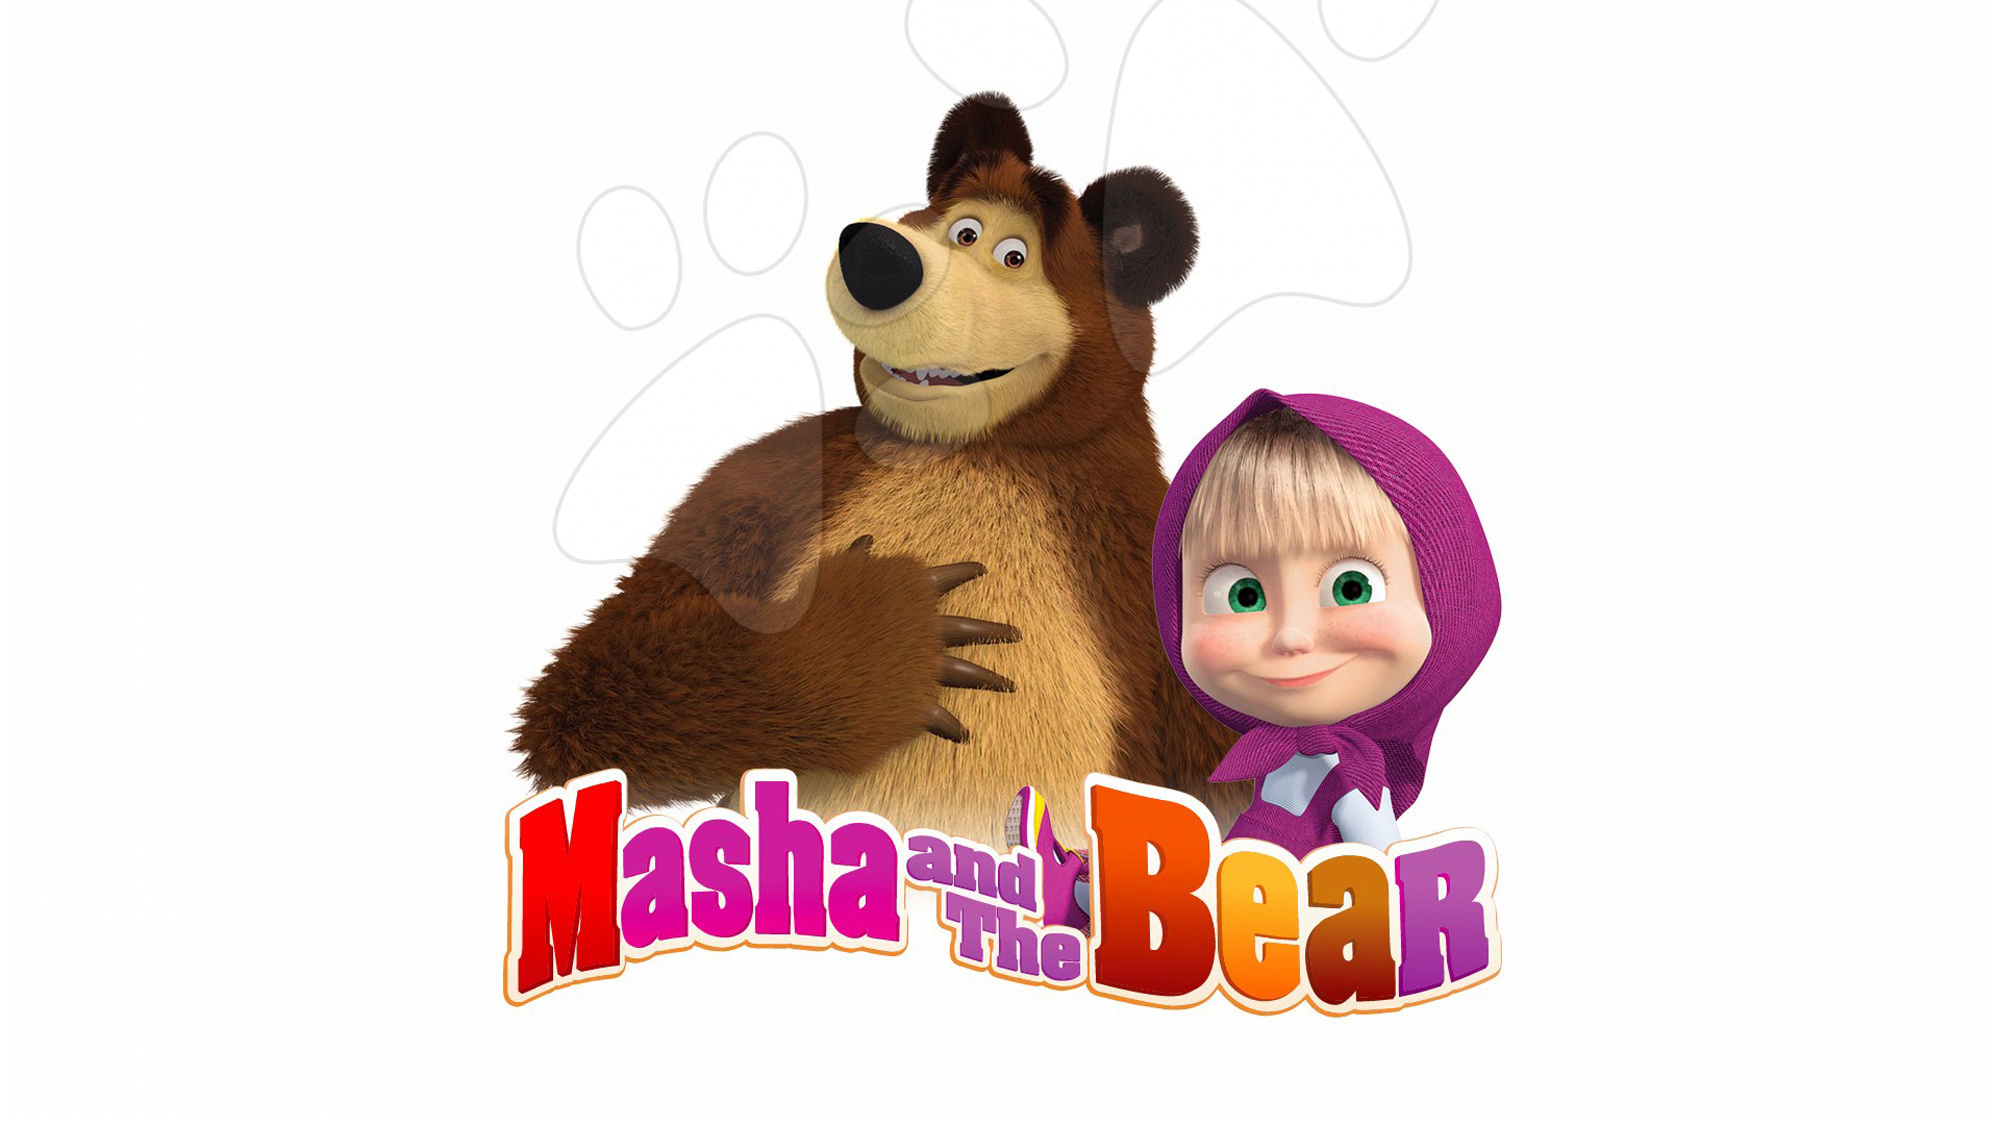 Masha el oso. Маша и медведь (Masha and the Bear) - репетиция оркестра. Маша и медведь картинки. Маша и медведь картинки для детей. Маша и медведь медведь.